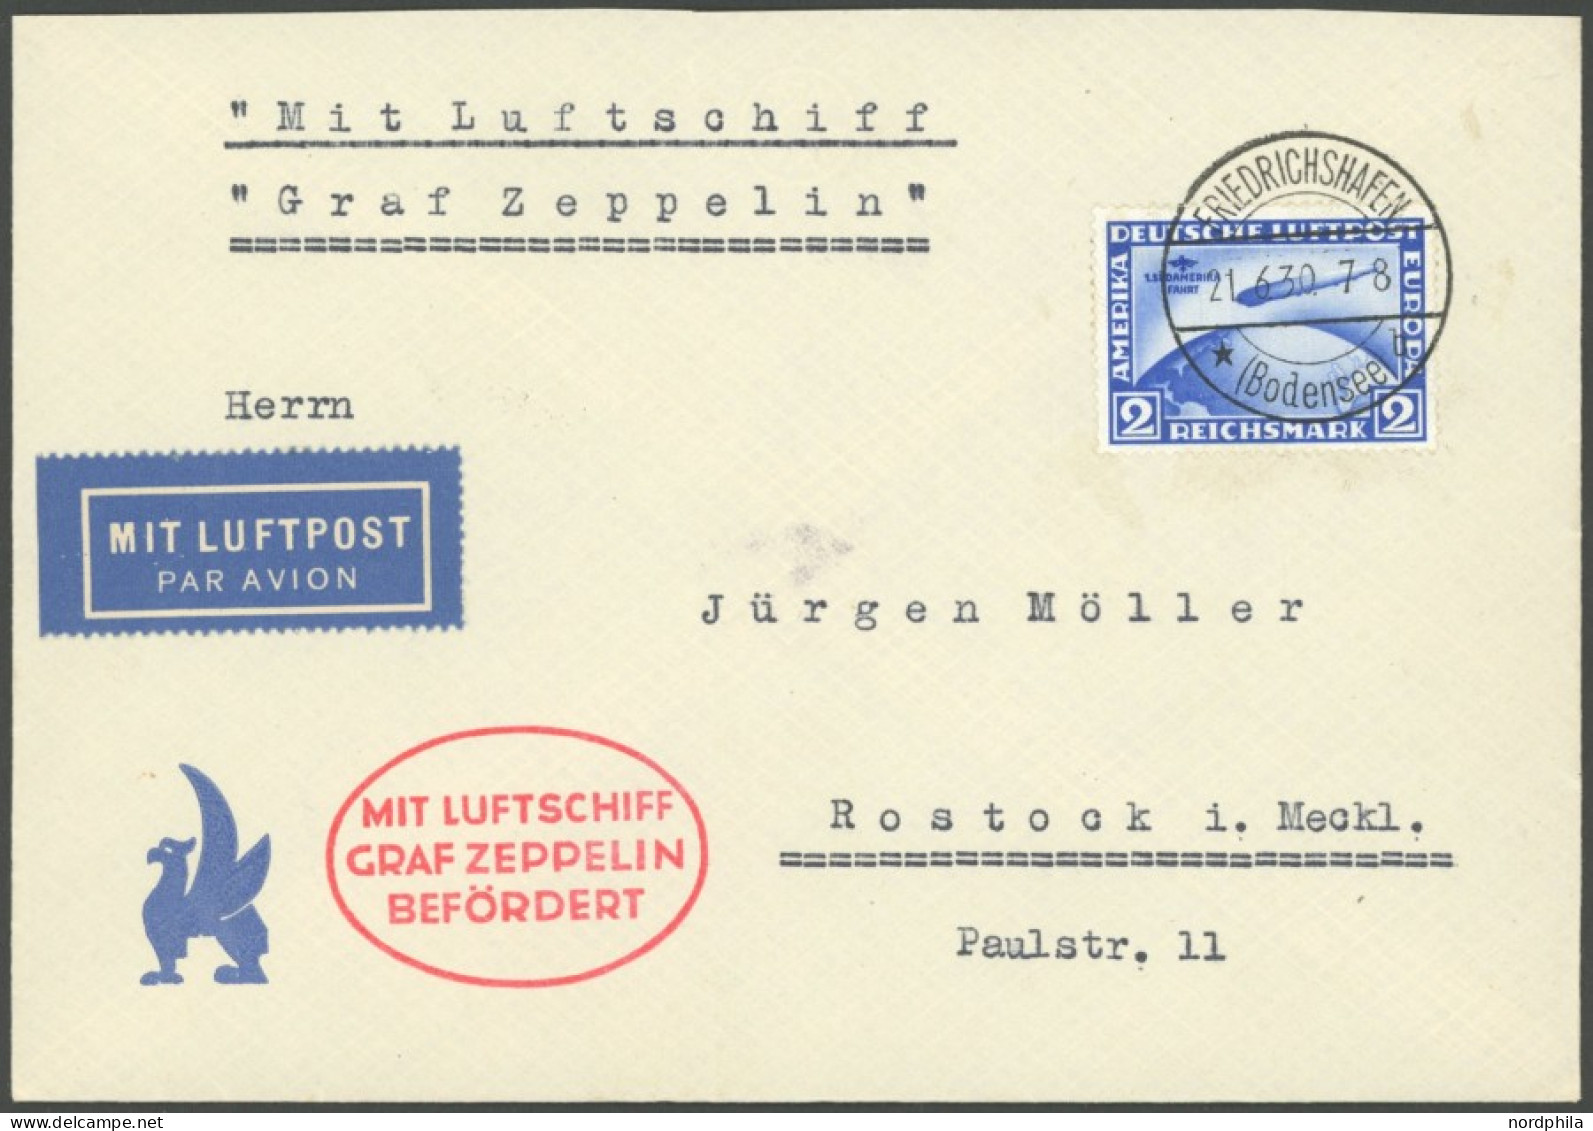 ZEPPELINPOST 68Ba BRIEF, 1930, Deutschlandfahrt, München - Kopenhagen - Berlin, Auflieferung Friedrichshafen, Frankiert  - Correo Aéreo & Zeppelin